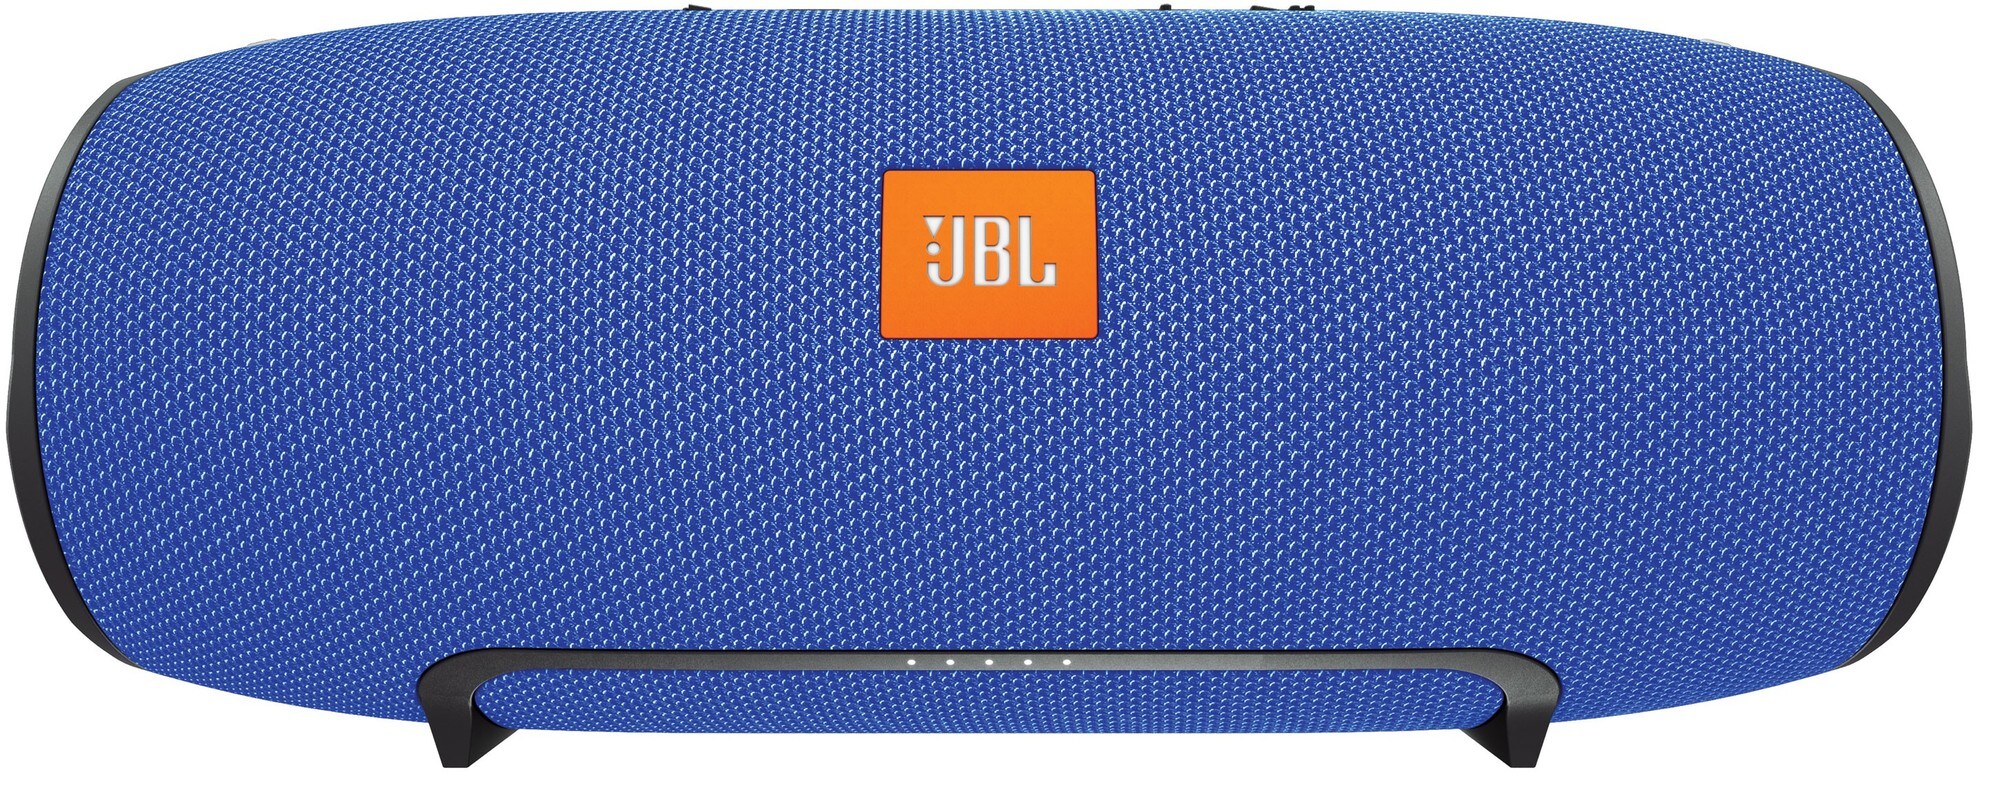 JBL Xtreme trådløs højttaler - blå - Højttalere - Elgiganten